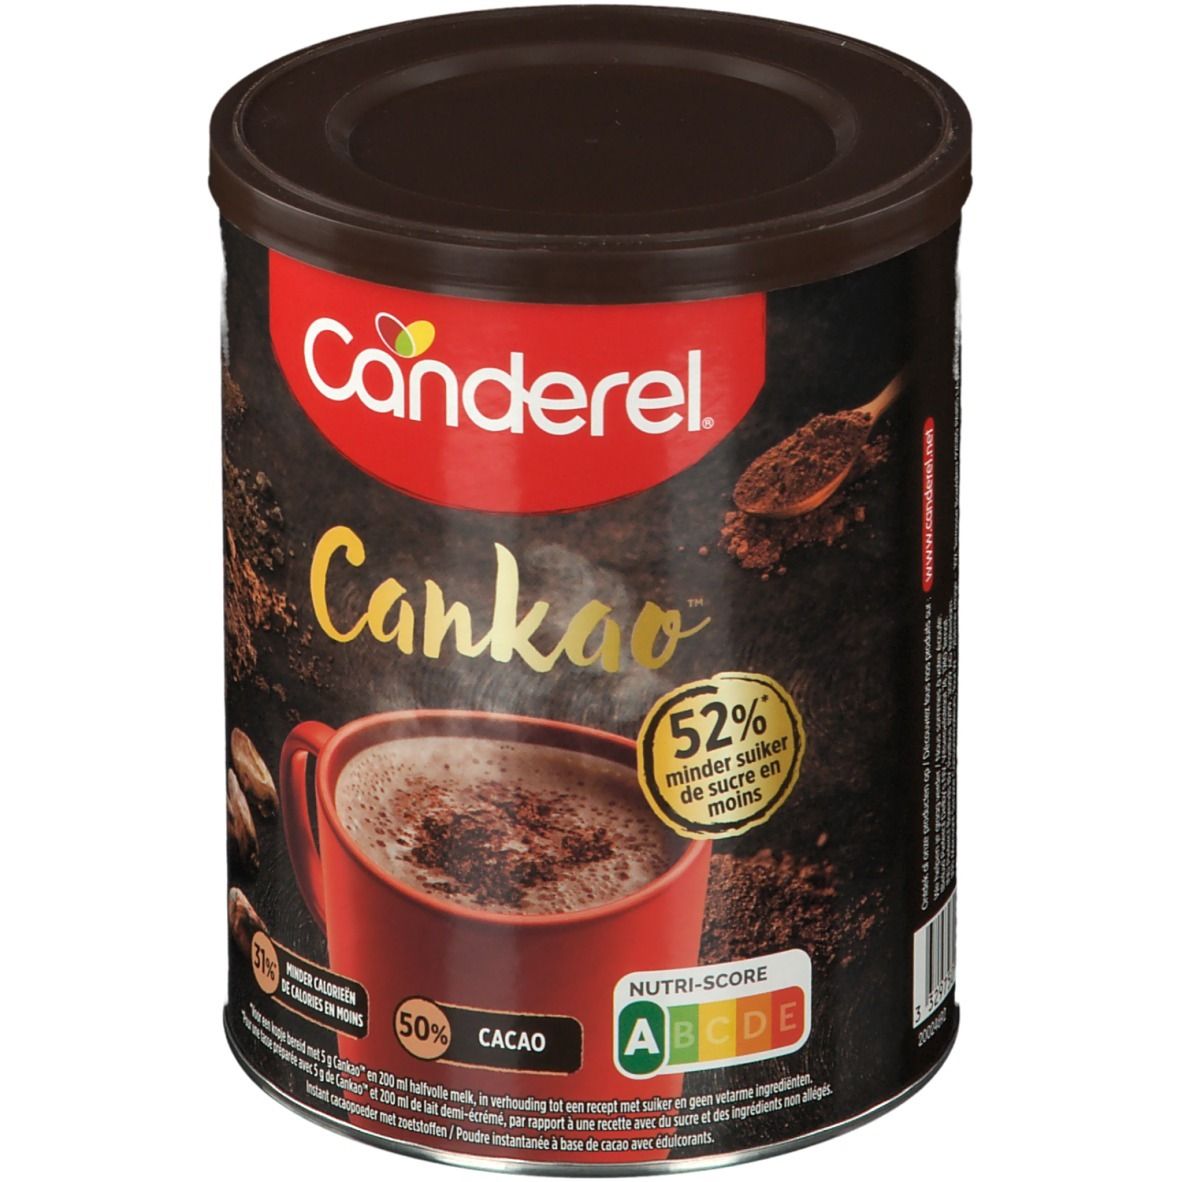 Combien y a-t-il de calories dans Canderel Cankao Poudre